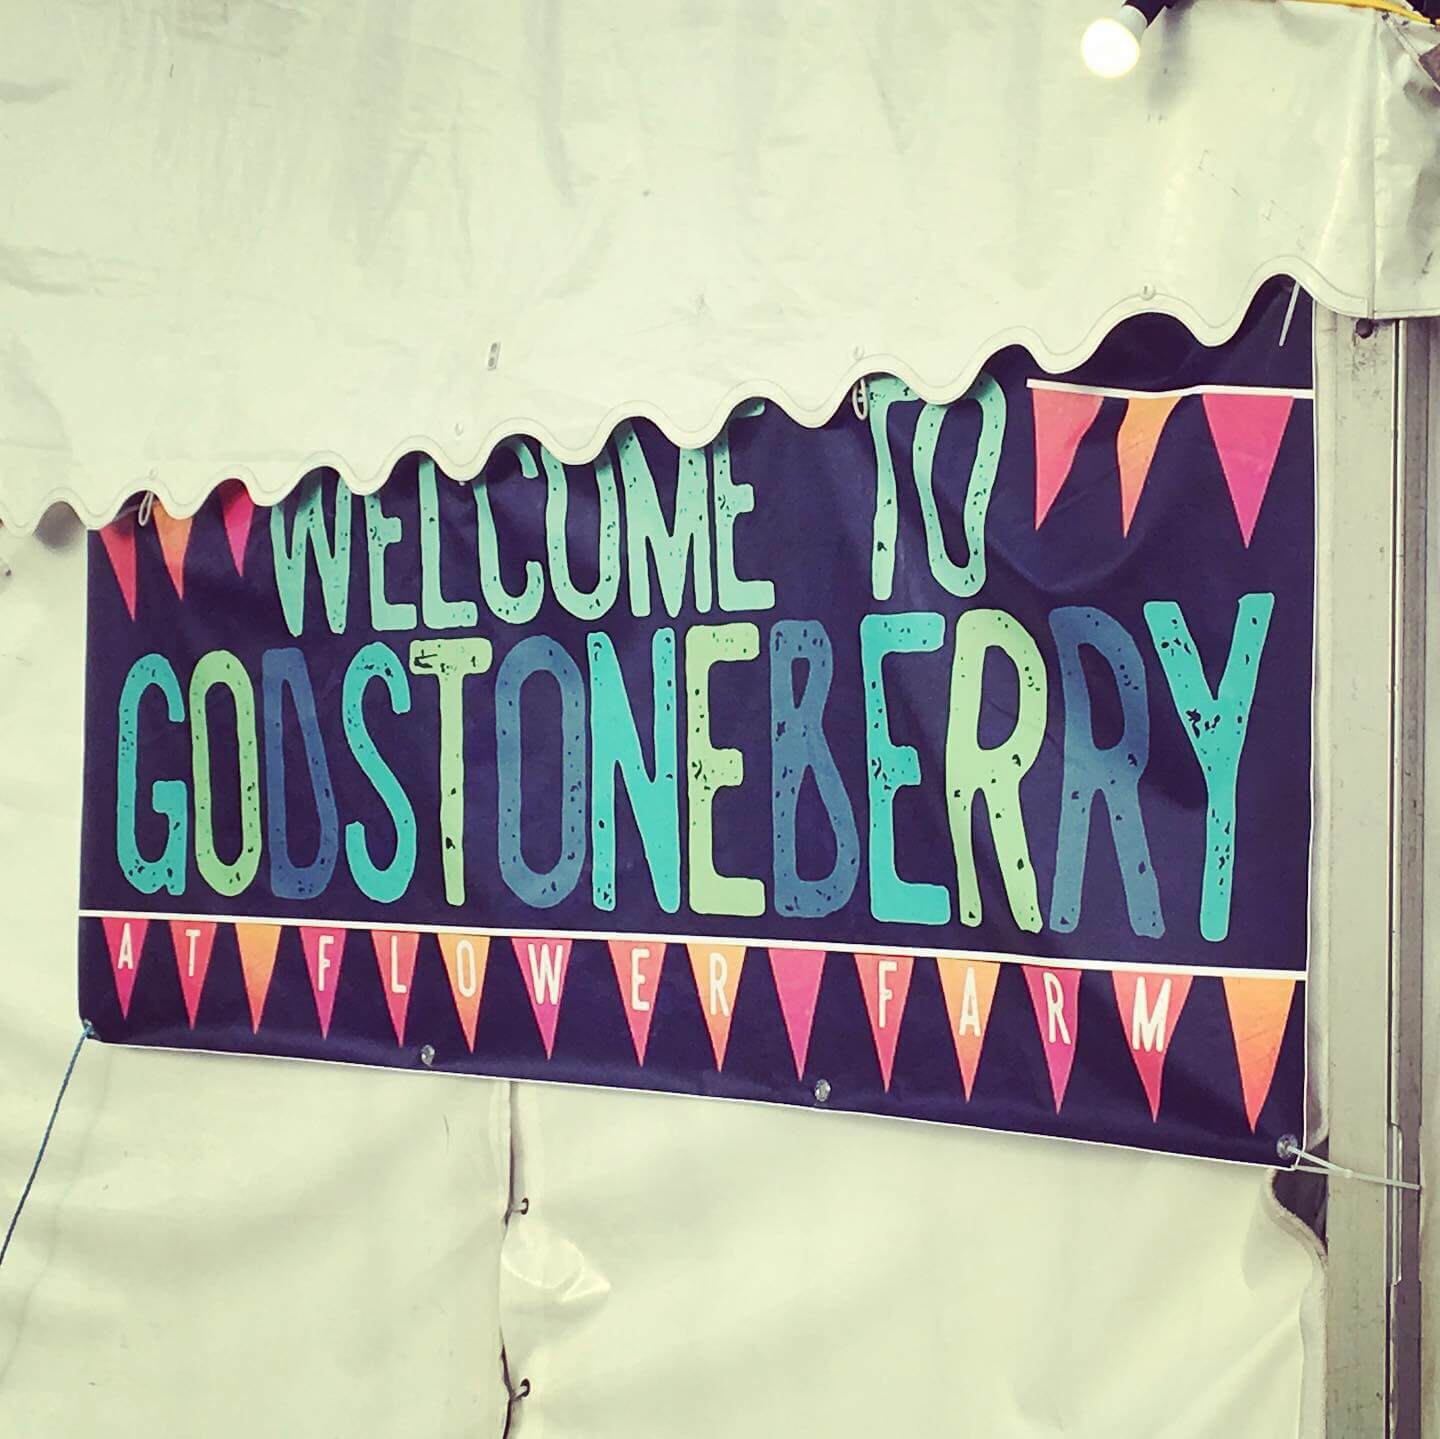 Godstoneberry Beer Festival 2019